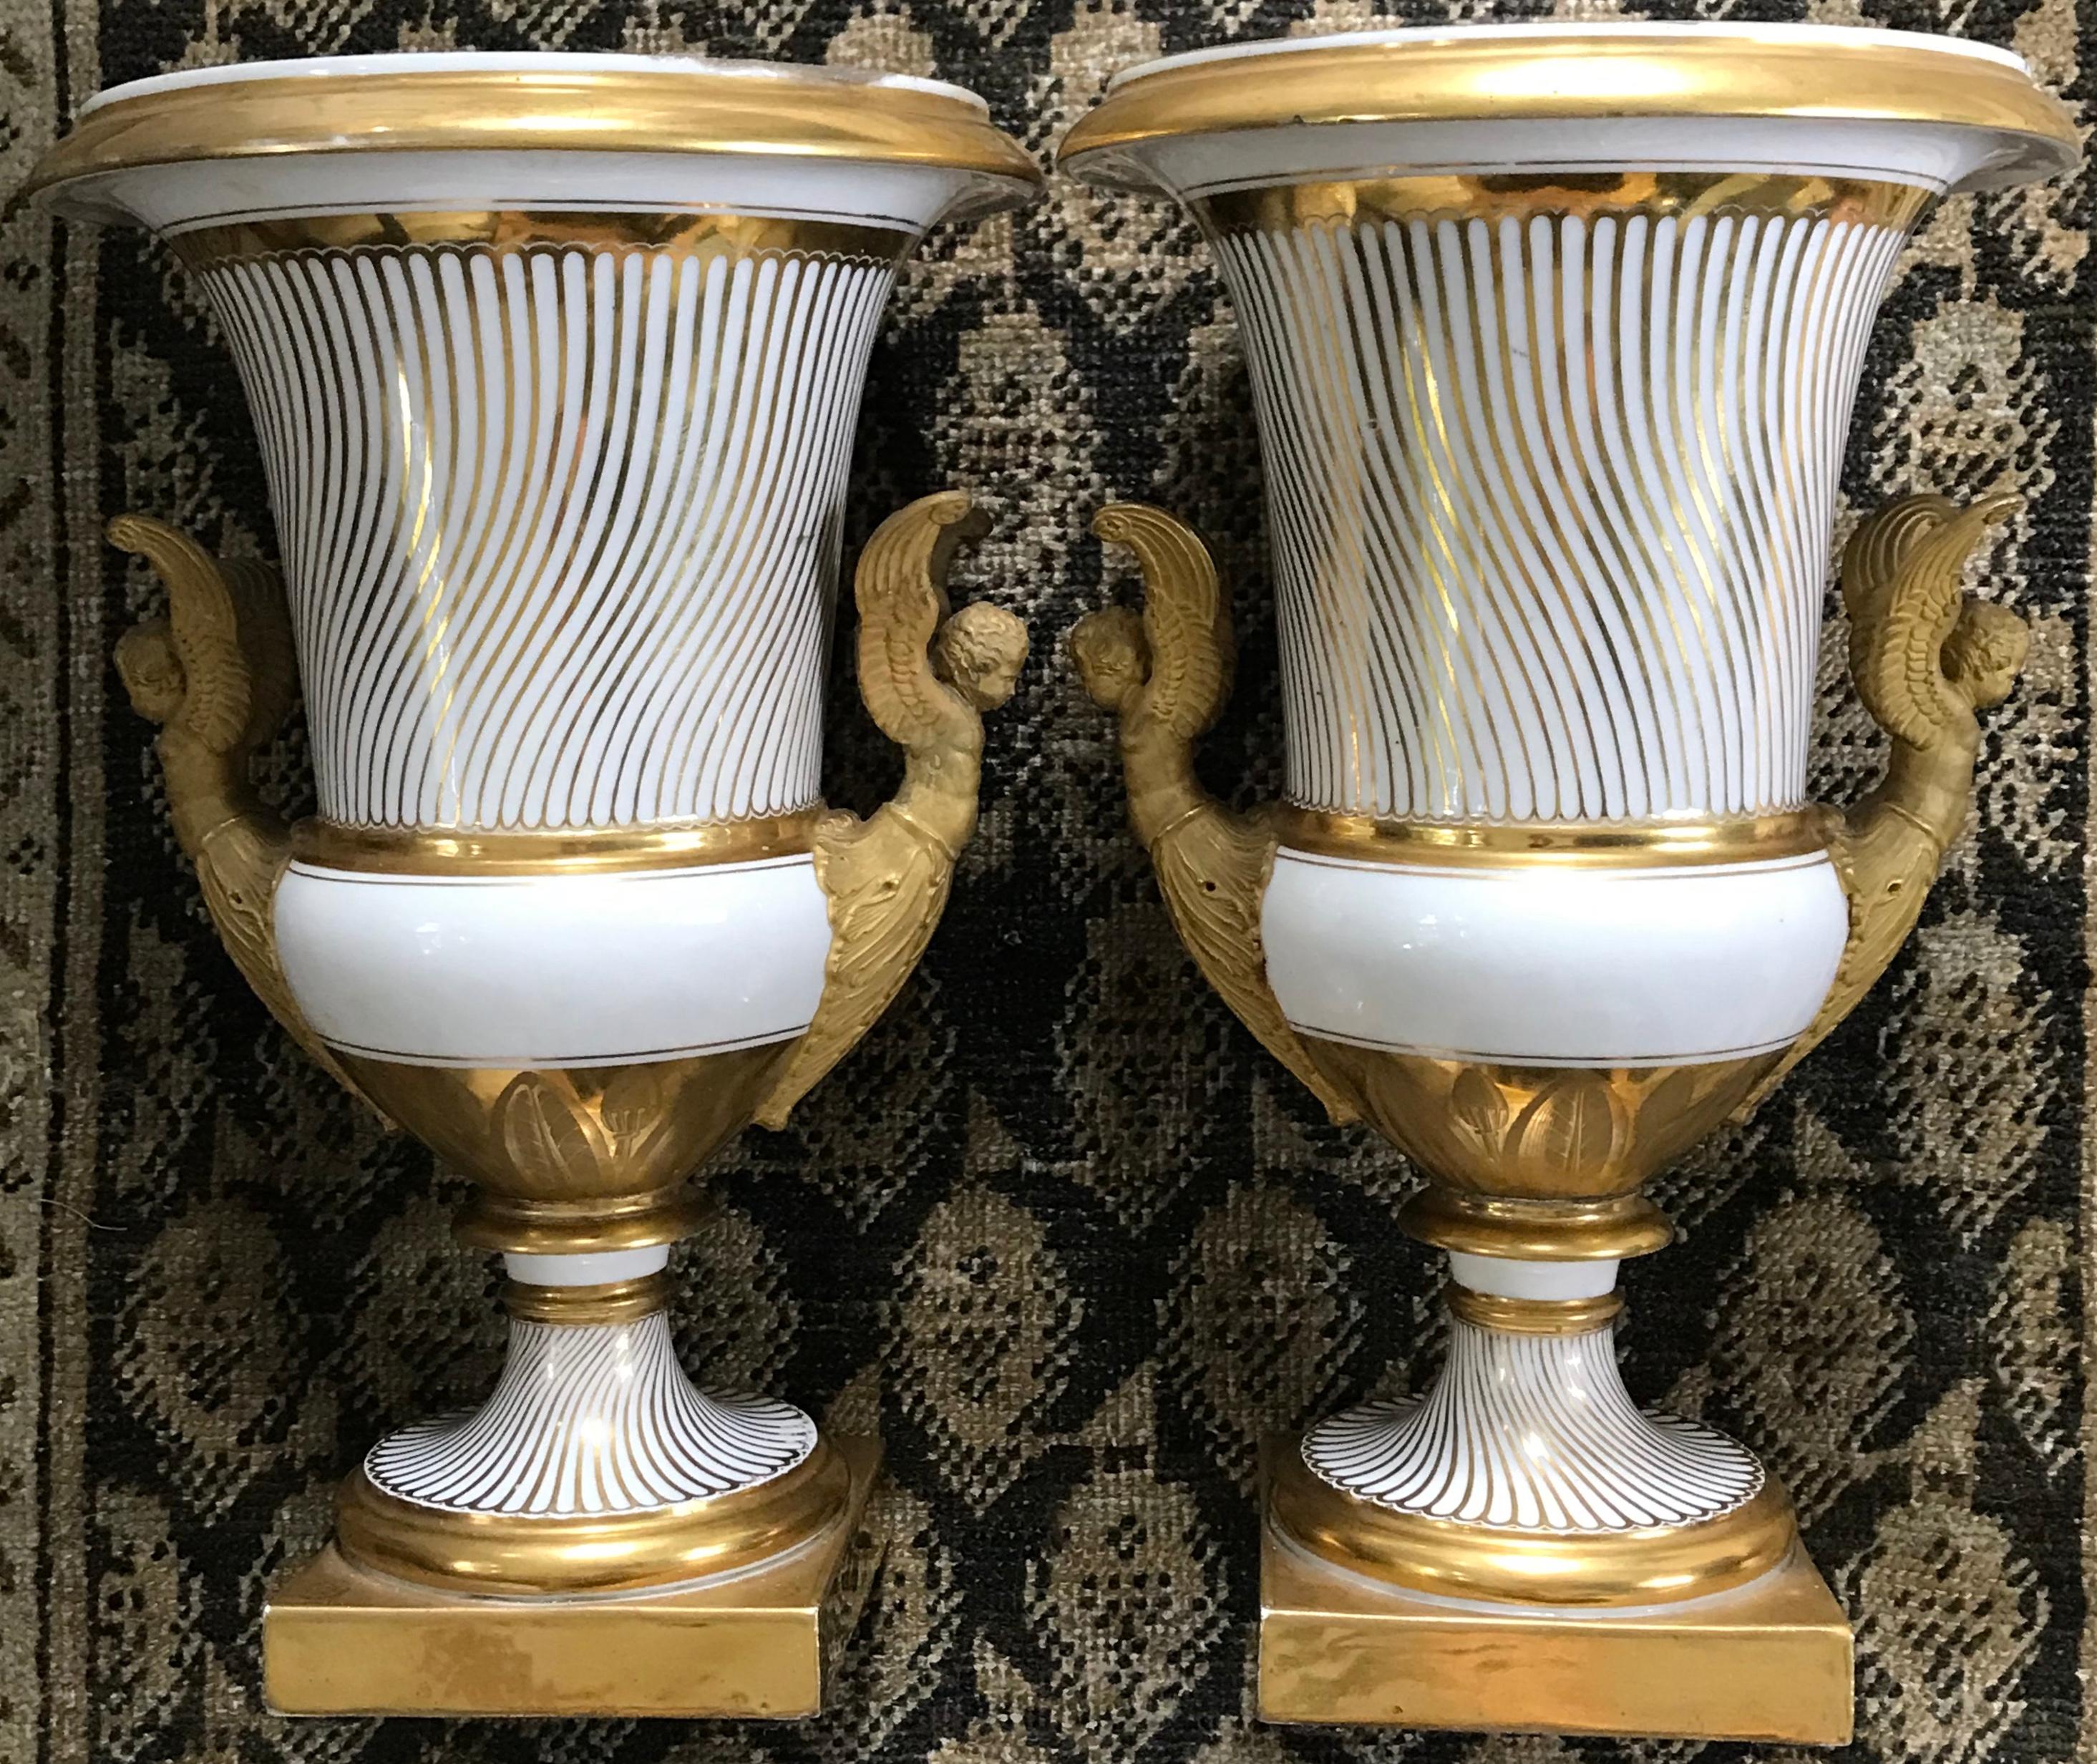 Paar neoklassische Vasen aus vergoldetem Pariser Porzellan. Außergewöhnliches Paar großer weiß und vergoldet bemalter Urnen in Campana-Form mit strigiliertem Muster auf dem Korpus bis zum vergoldeten weißen Sockel über vergoldetem Oliven- und